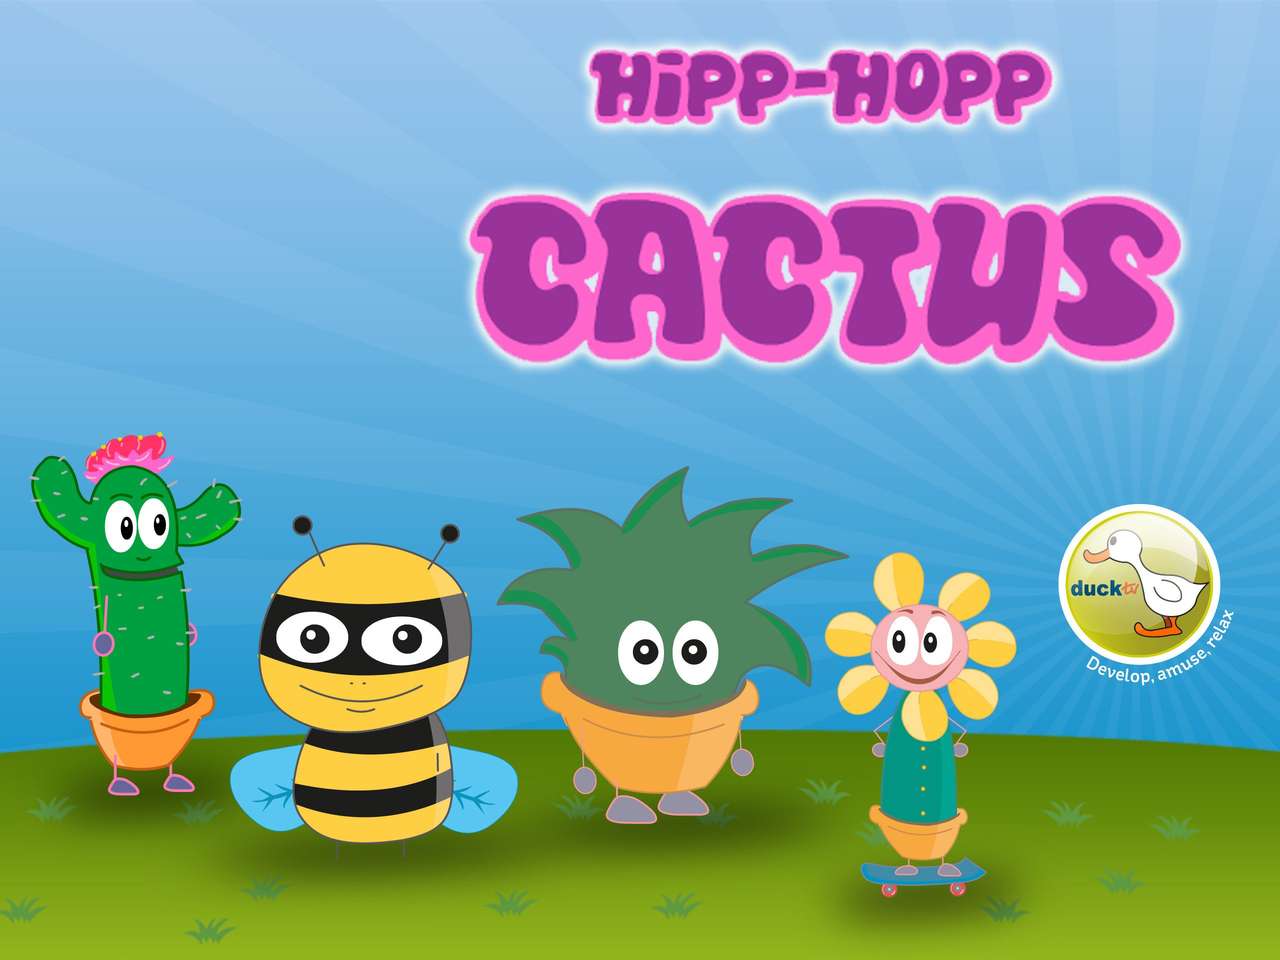 PUZZLE TV HIPP-HOPP CACTUS DUCK jigsaw puzzle online